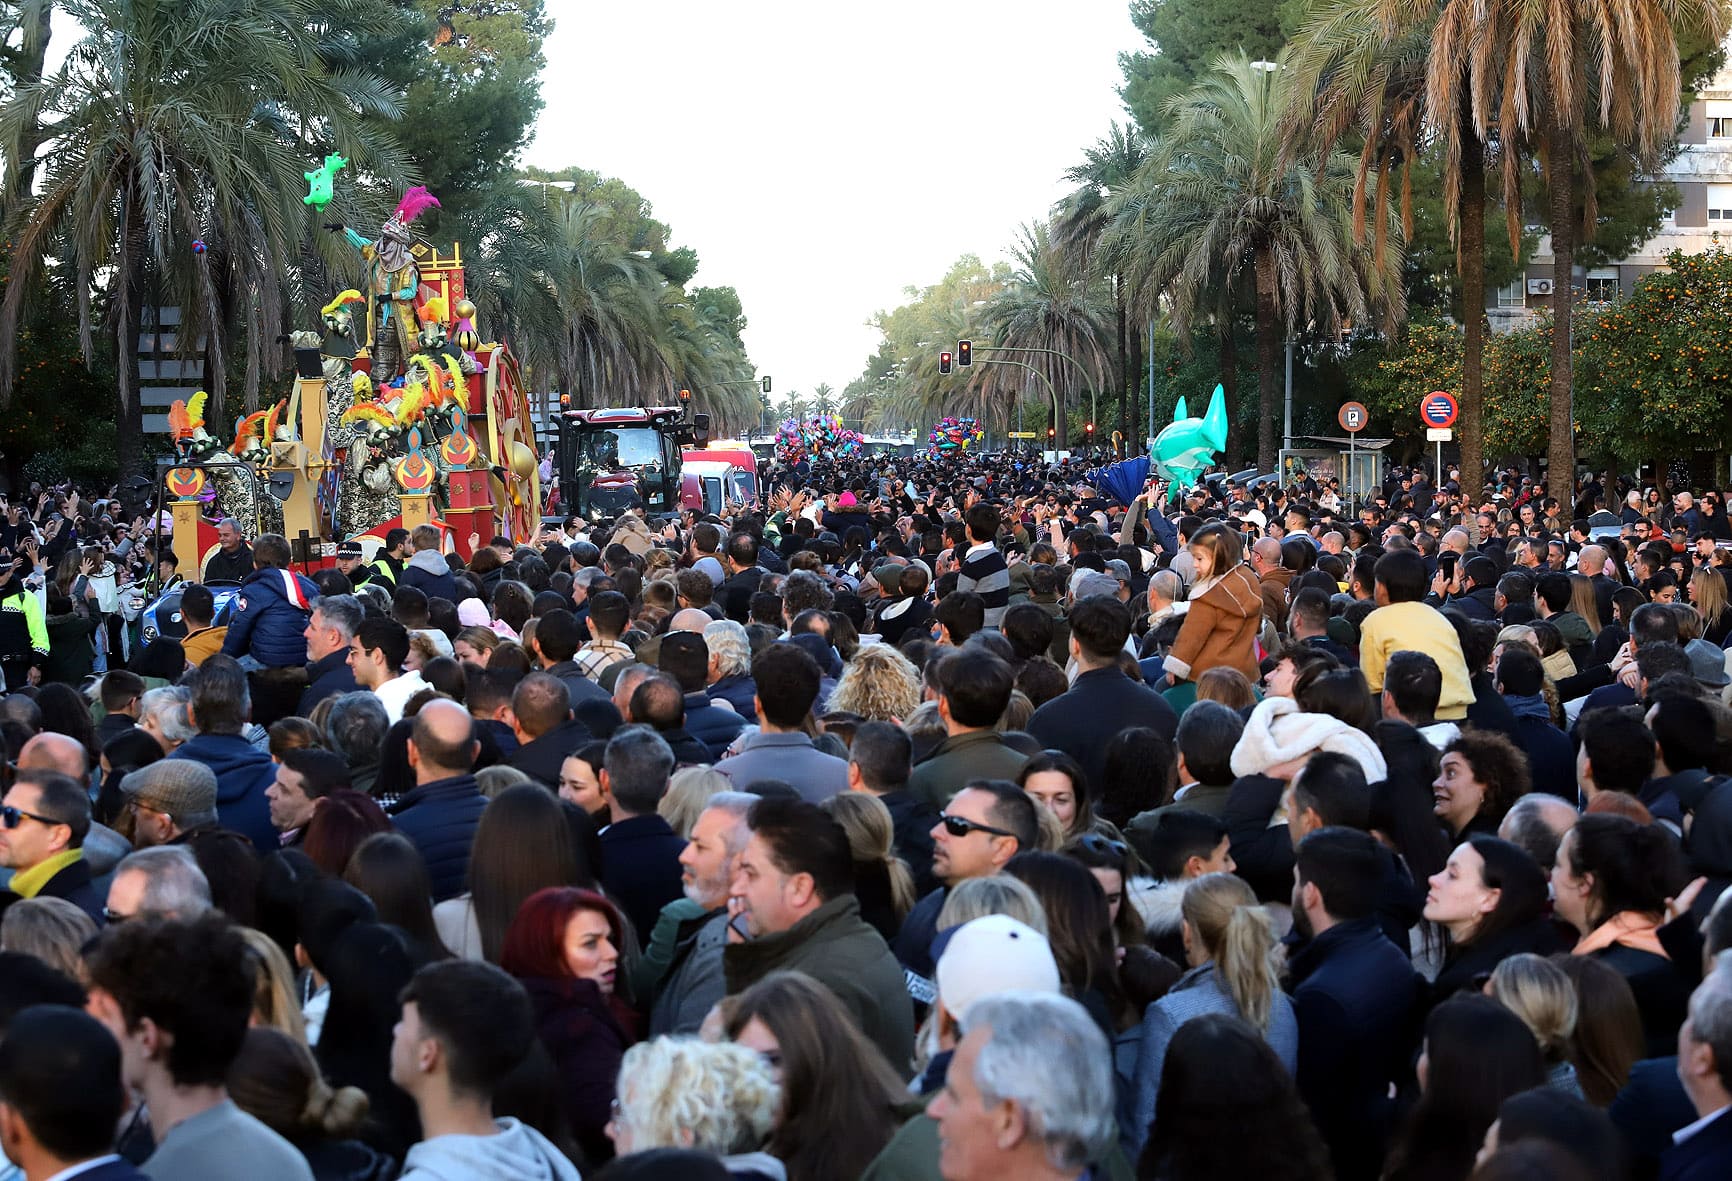 La Cabalgata de los Reyes Magos en Jerez: Un desfile lleno de magia y tradición